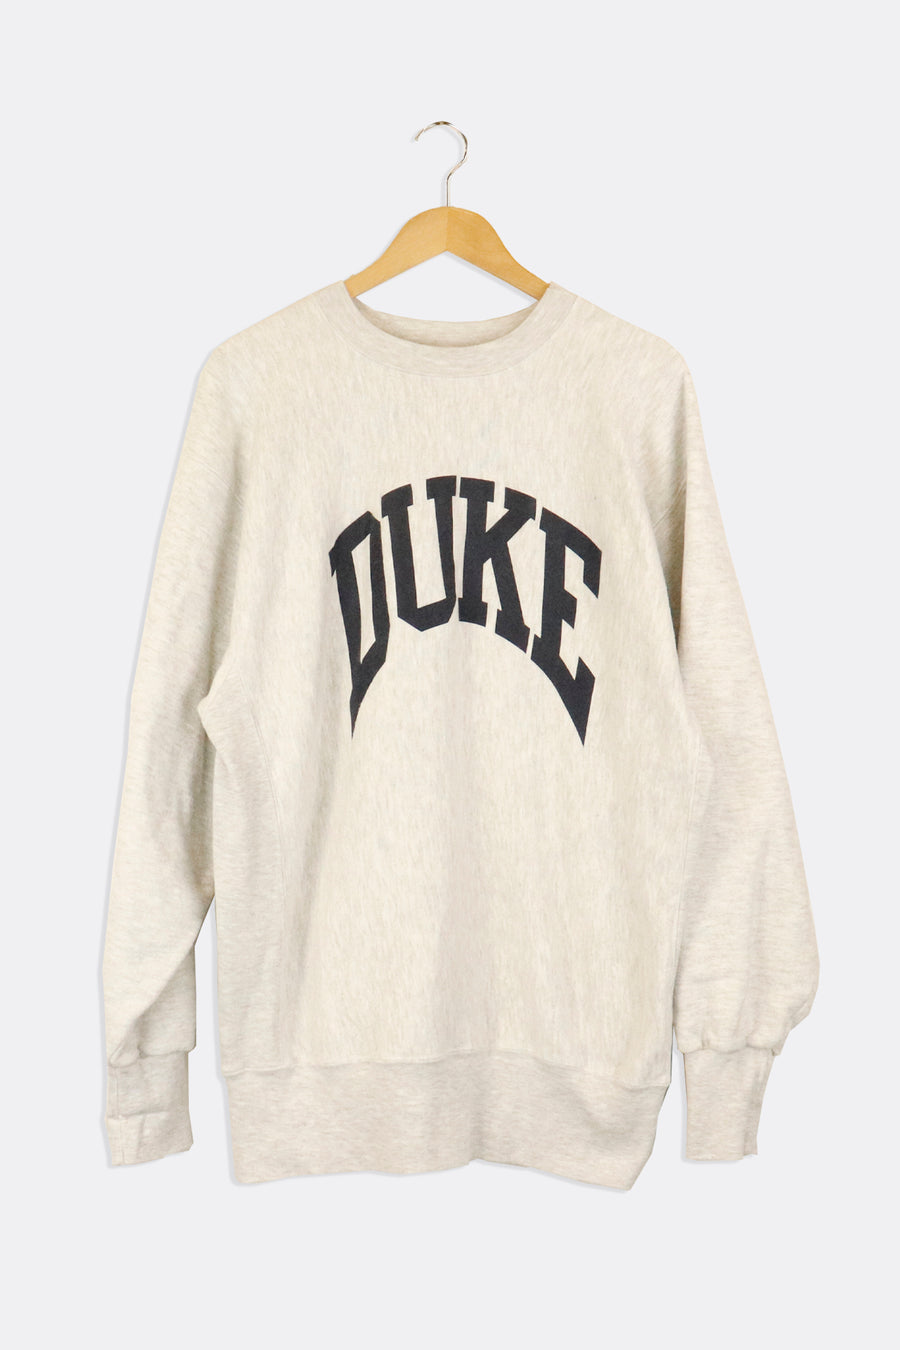 Vintage Duke Varsity Font Simple Vinyl Sweatshirt Sz 2XL